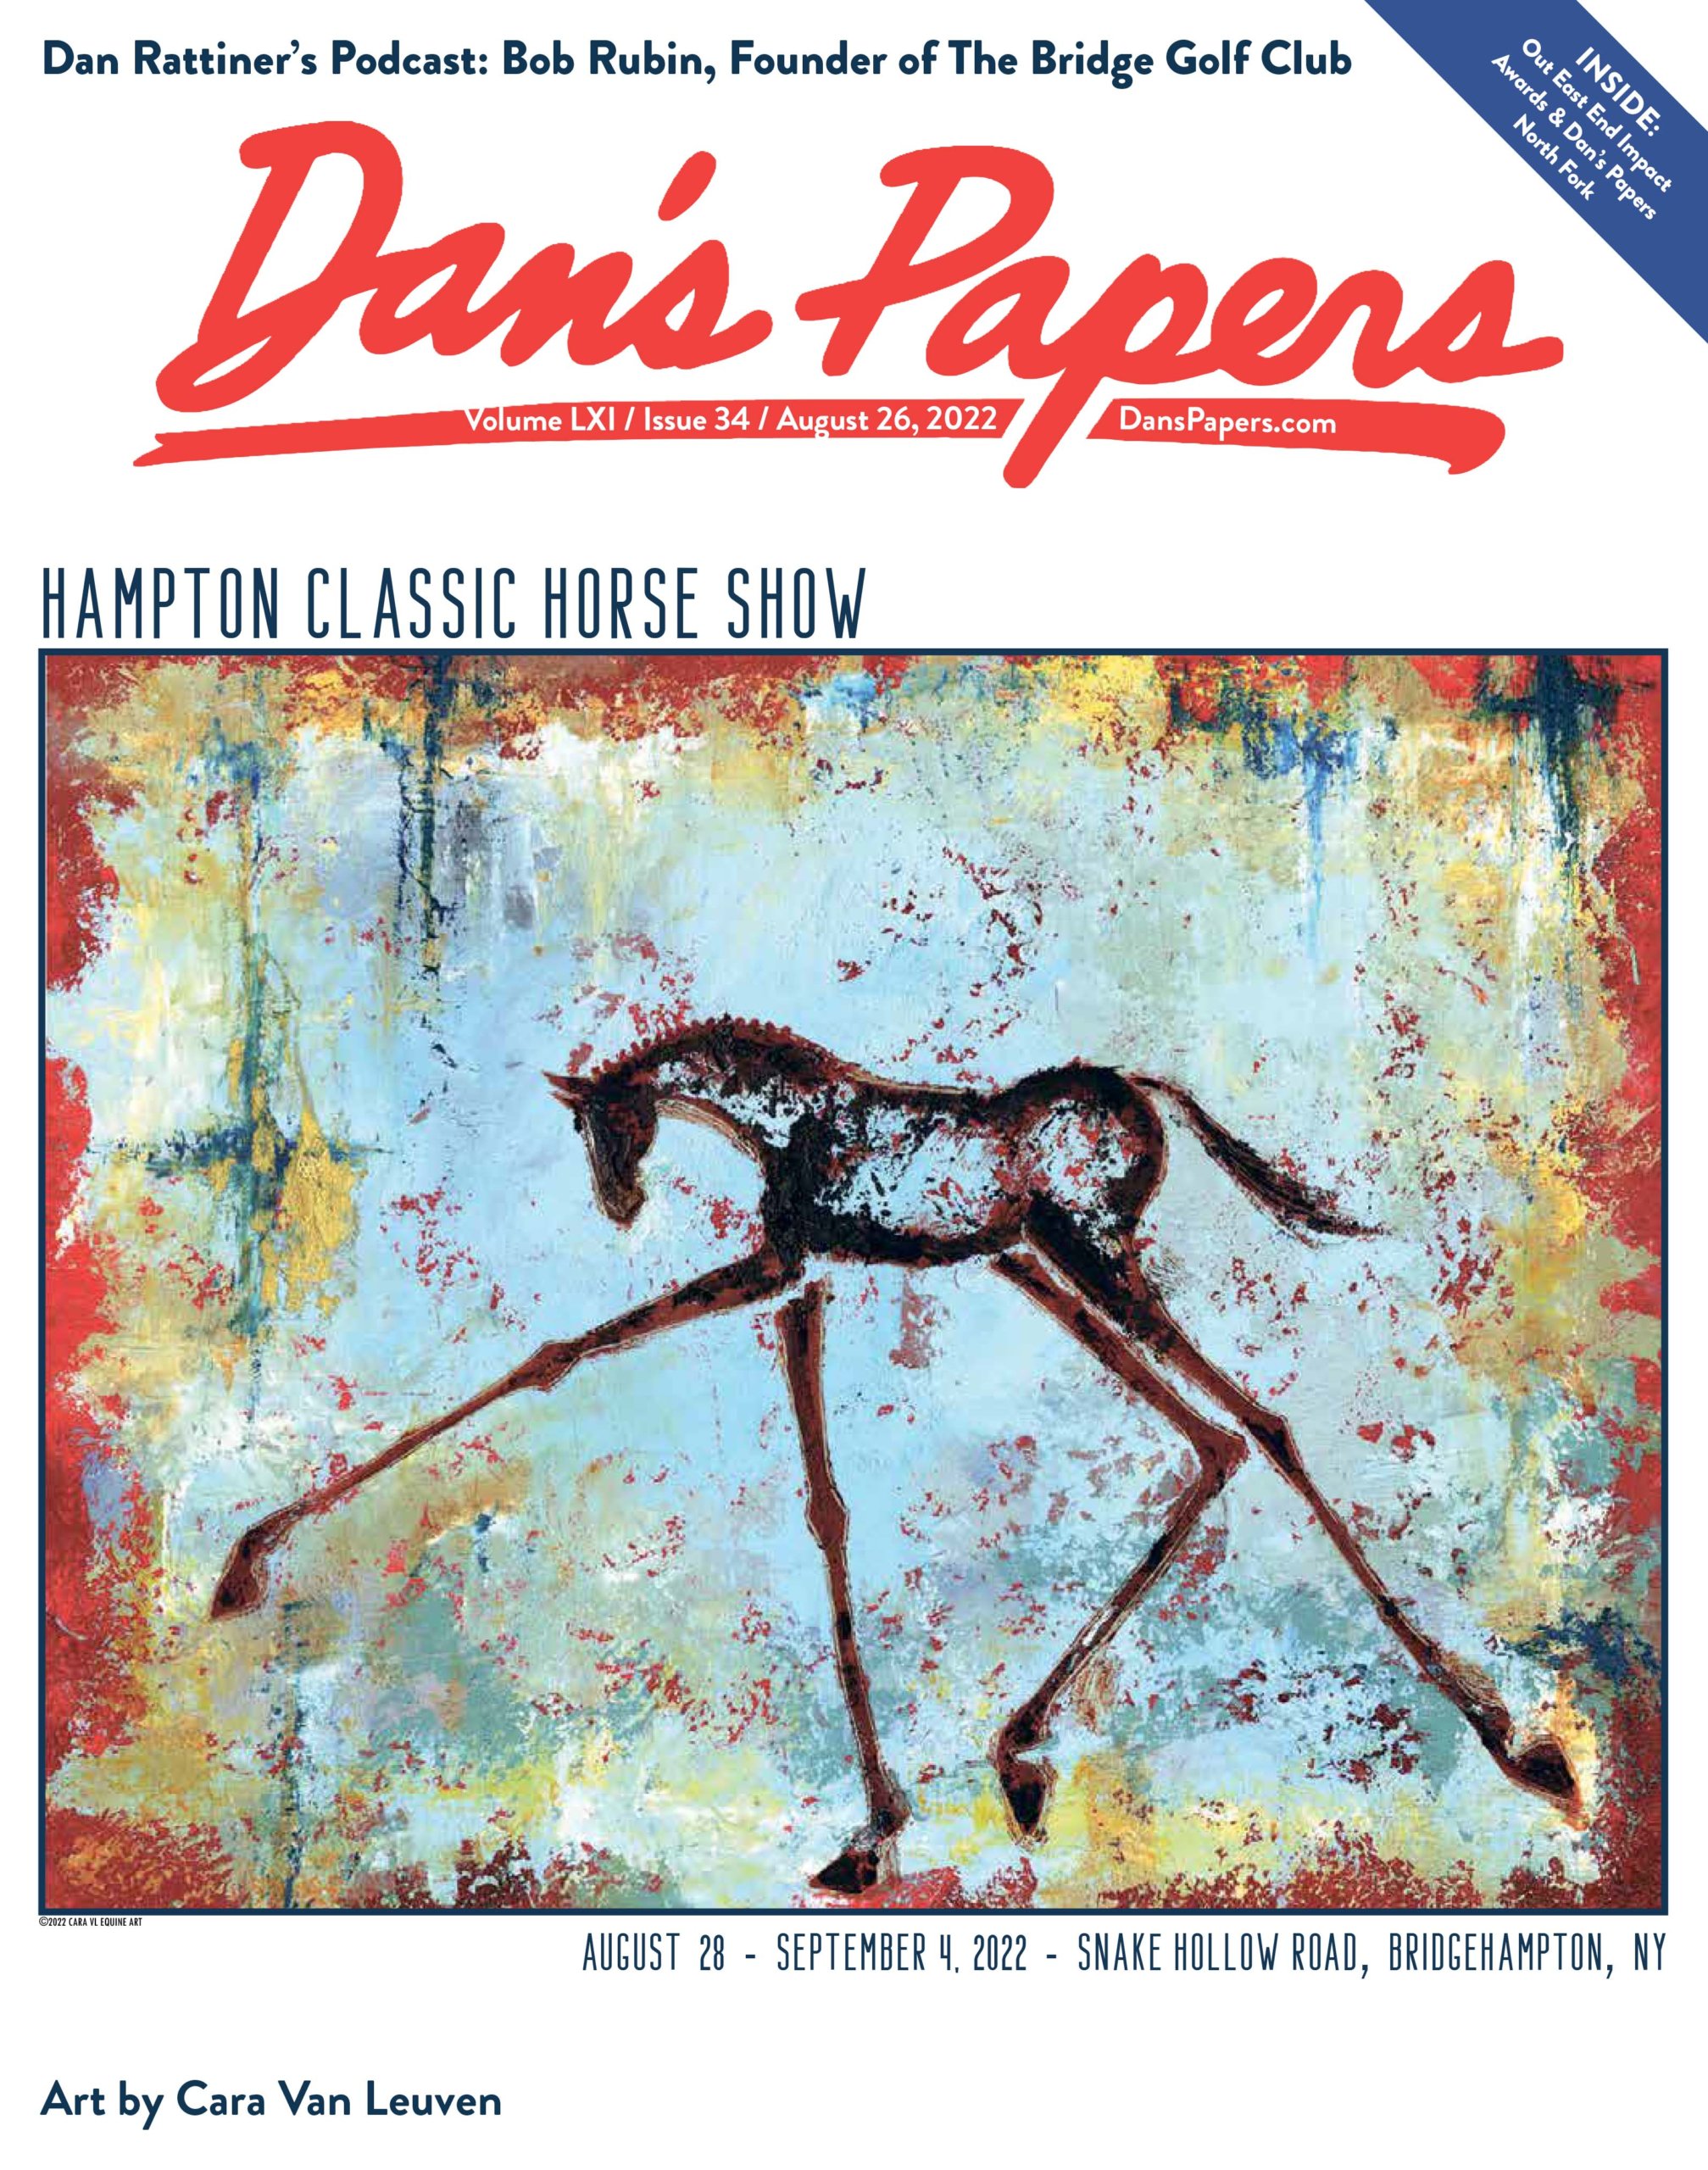 August 26, 2022 Dan's Papers cover art (and Hampton Classic poster art) by Cara Van Leuven